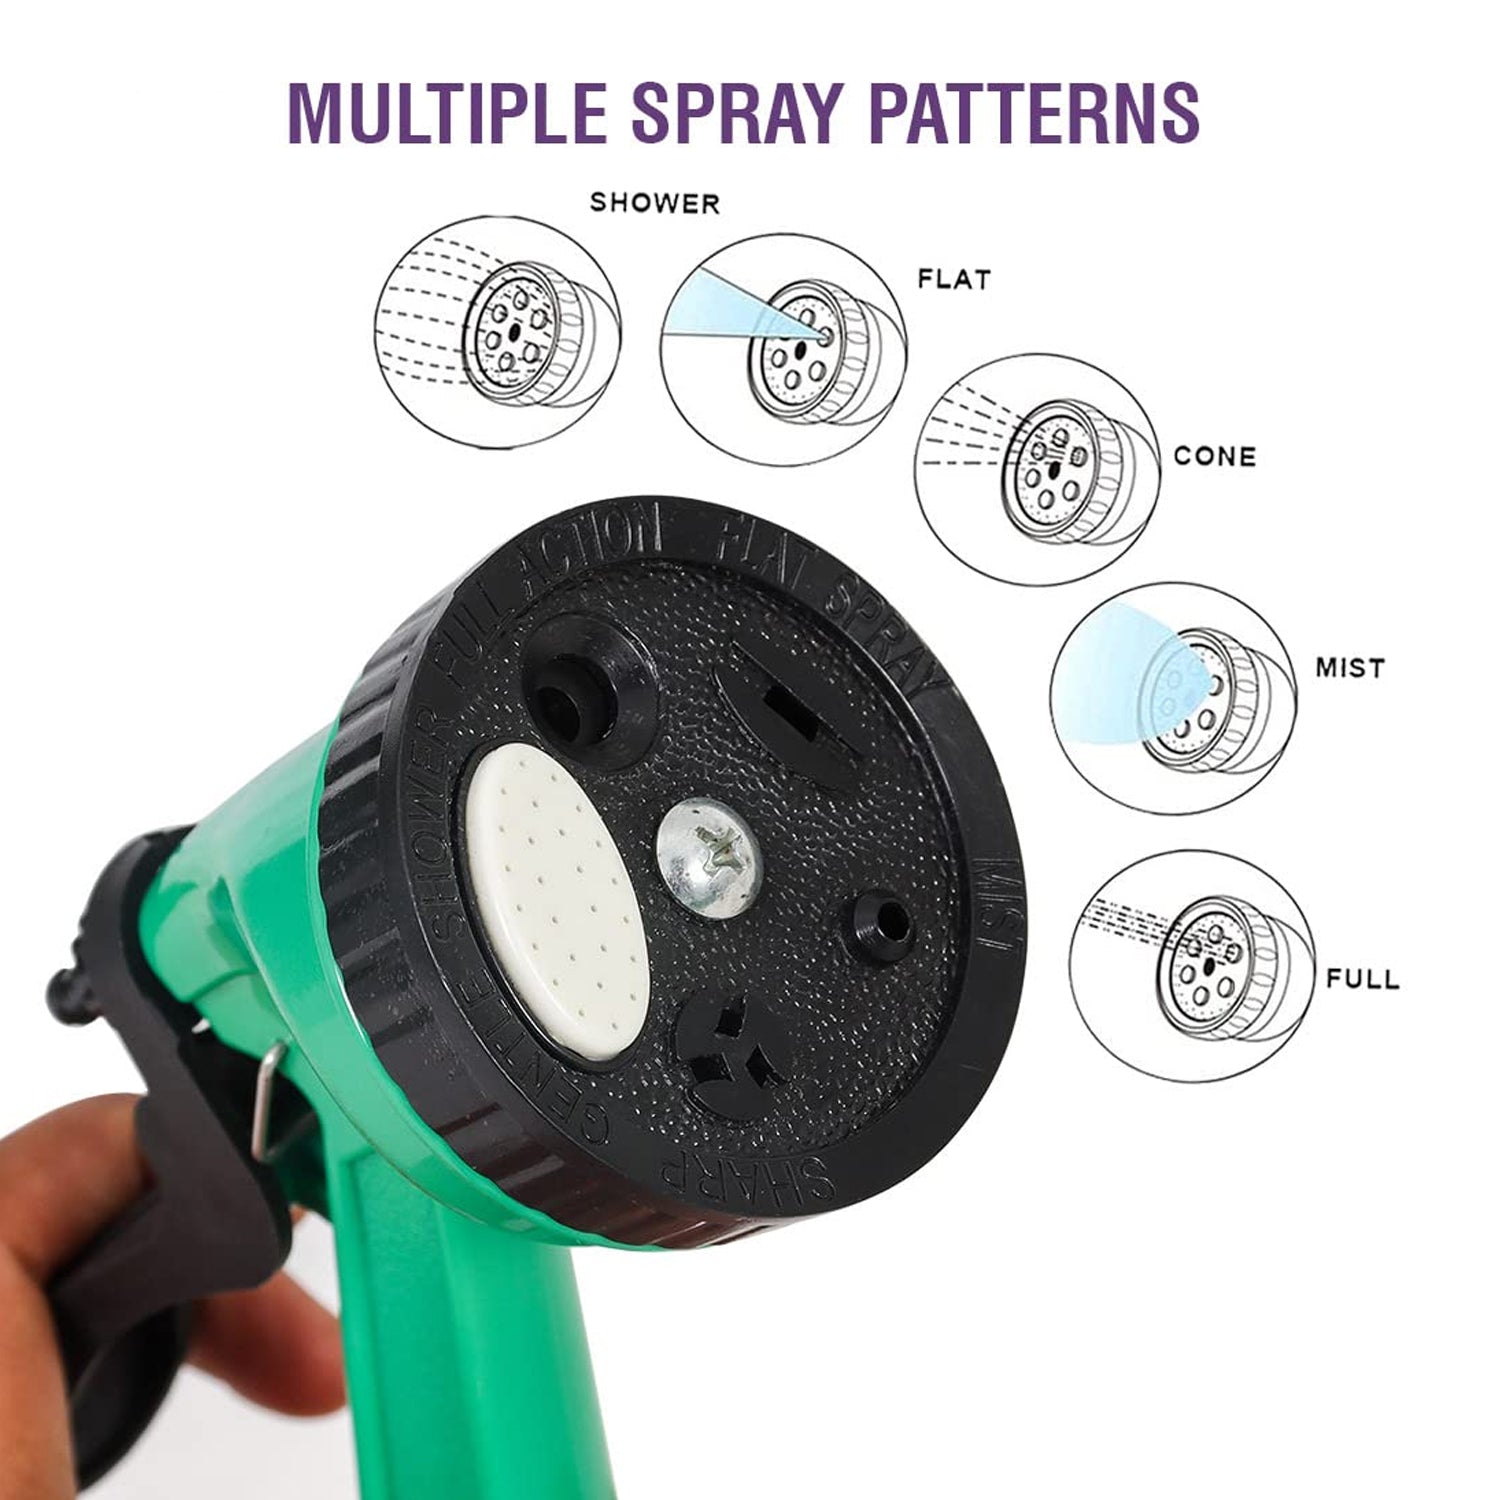 0477A  Garden Hose Nozzle Spray Nozzle with Adjustable For Garden & Multi Use DeoDap